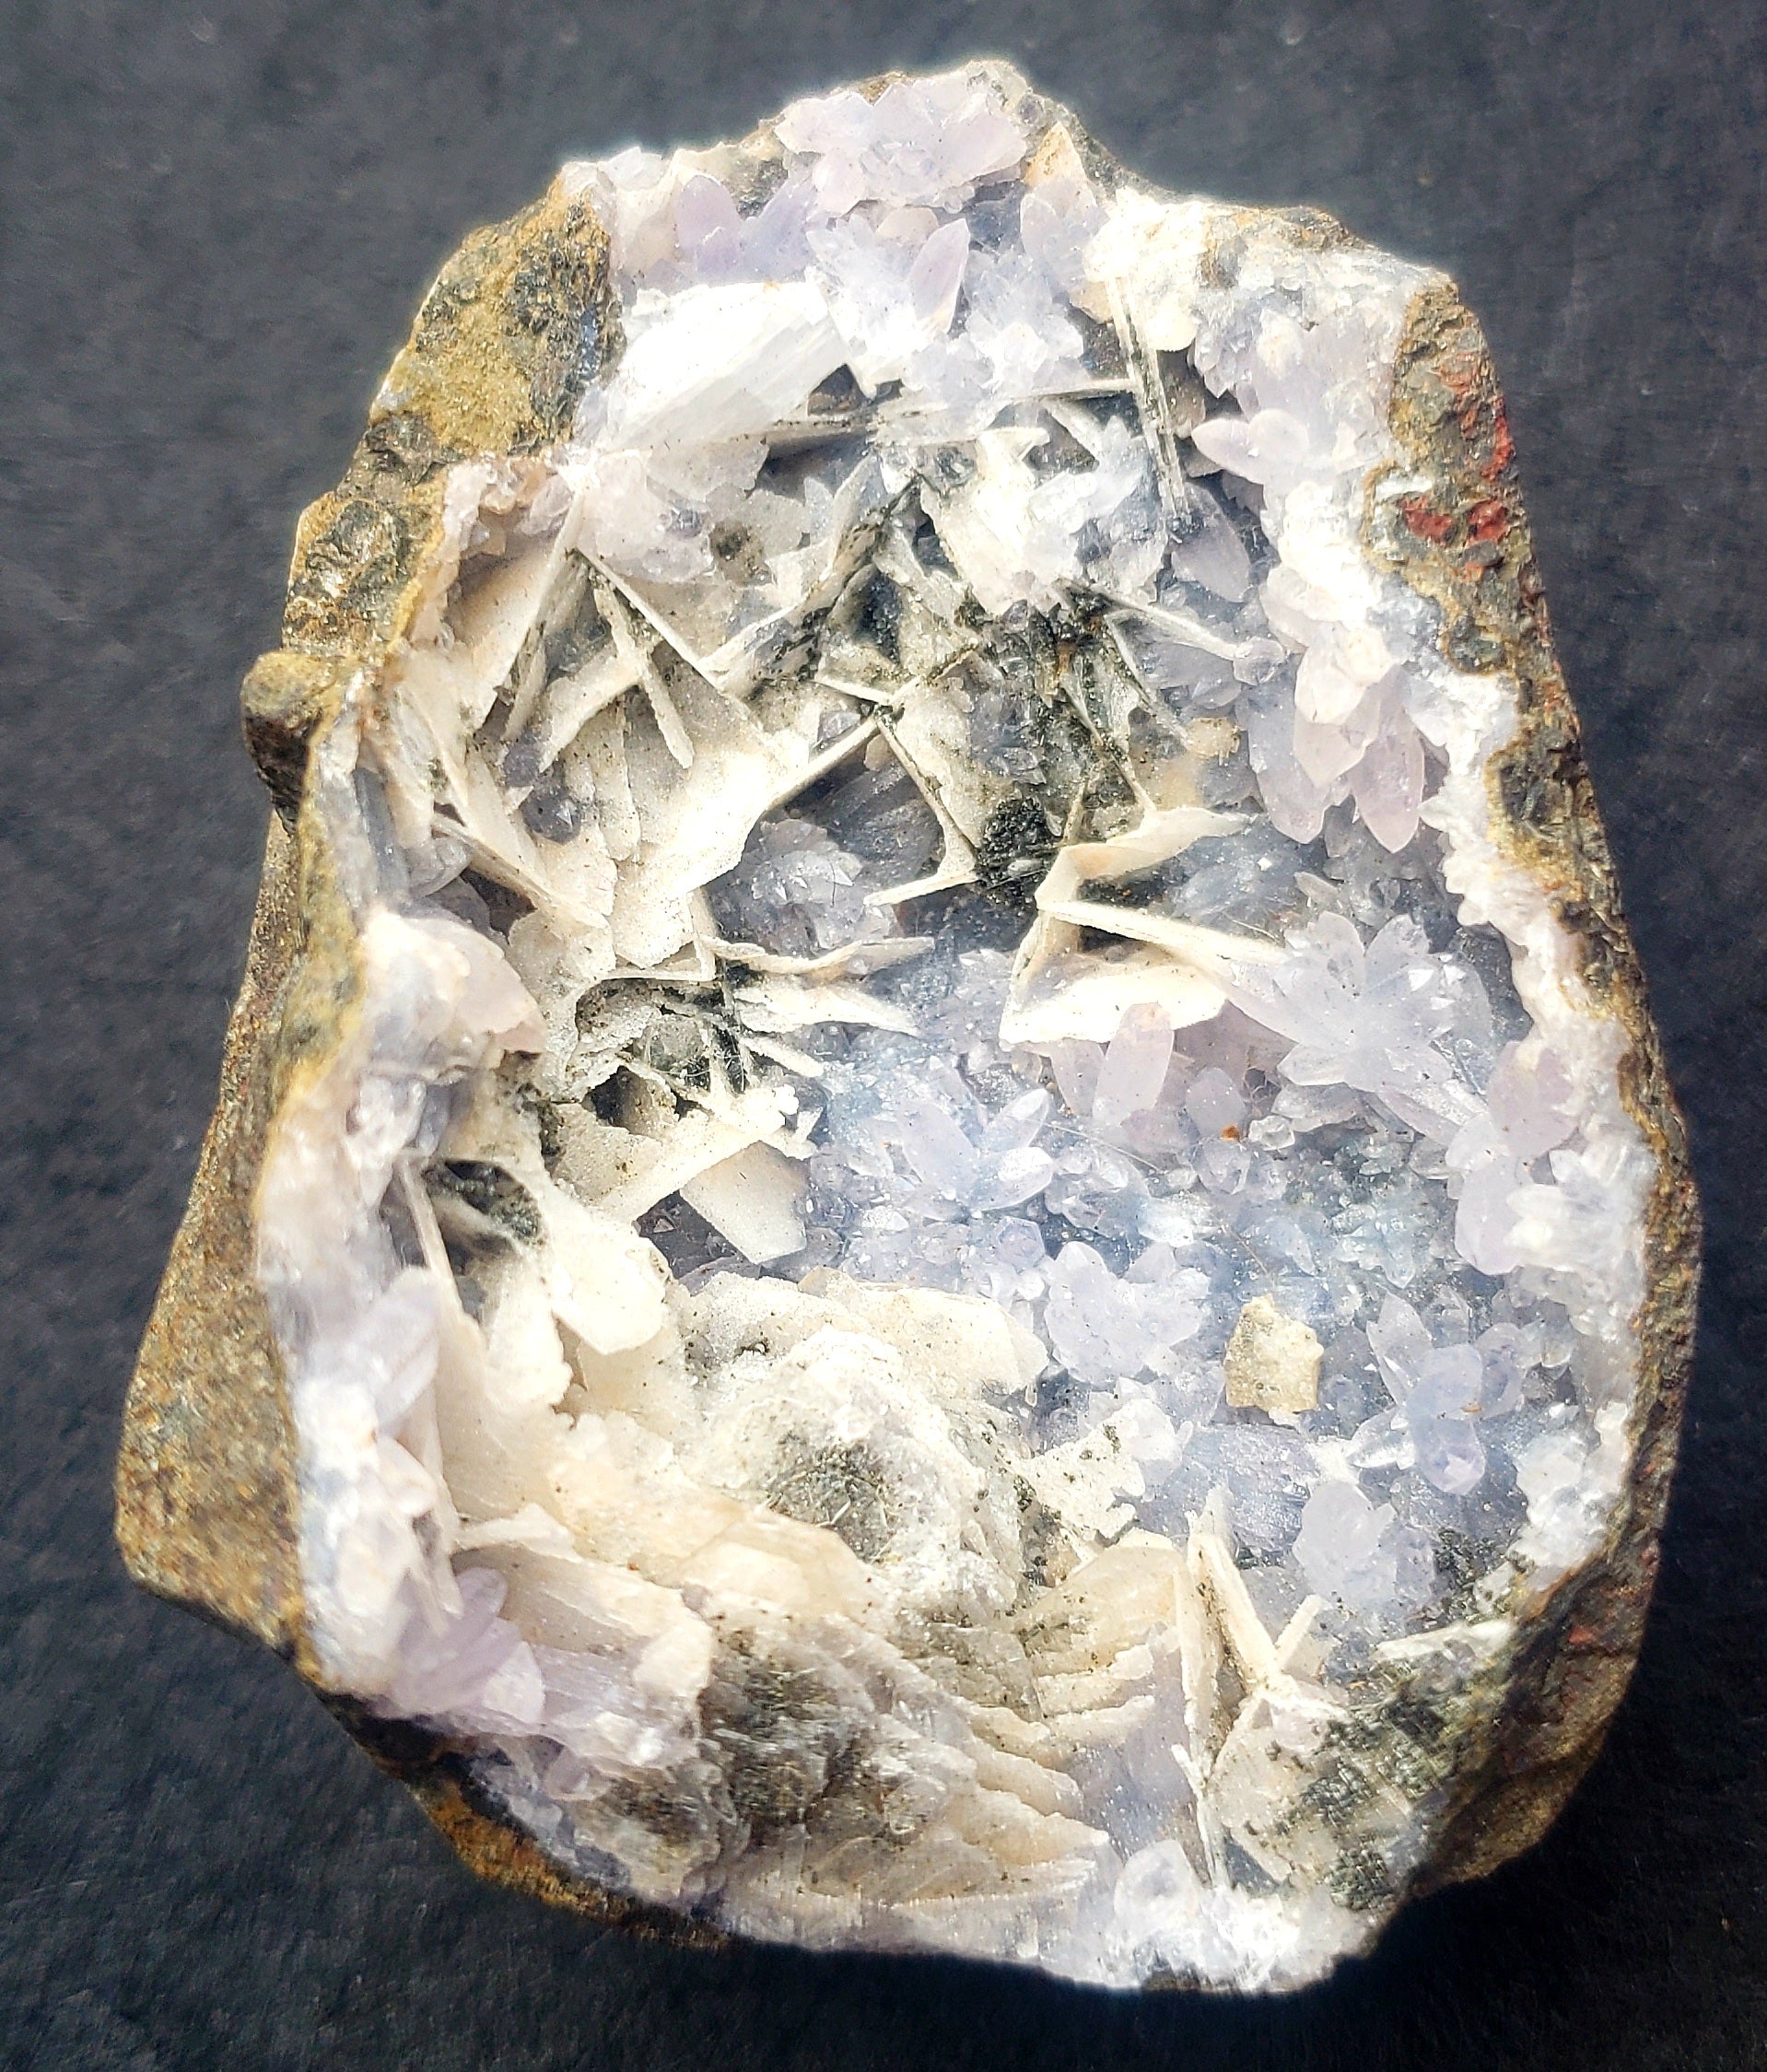 Unique blue quartz with barite specimen - 76grams